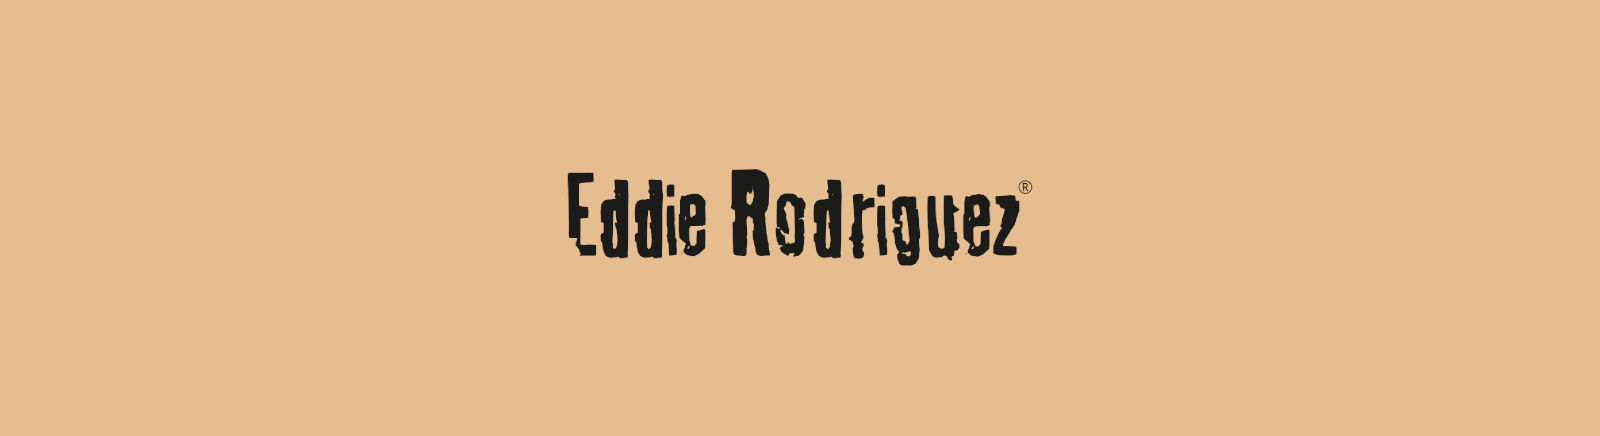 Juppen: Eddie Rodriguez Sandalen für Damen kaufen online shoppen